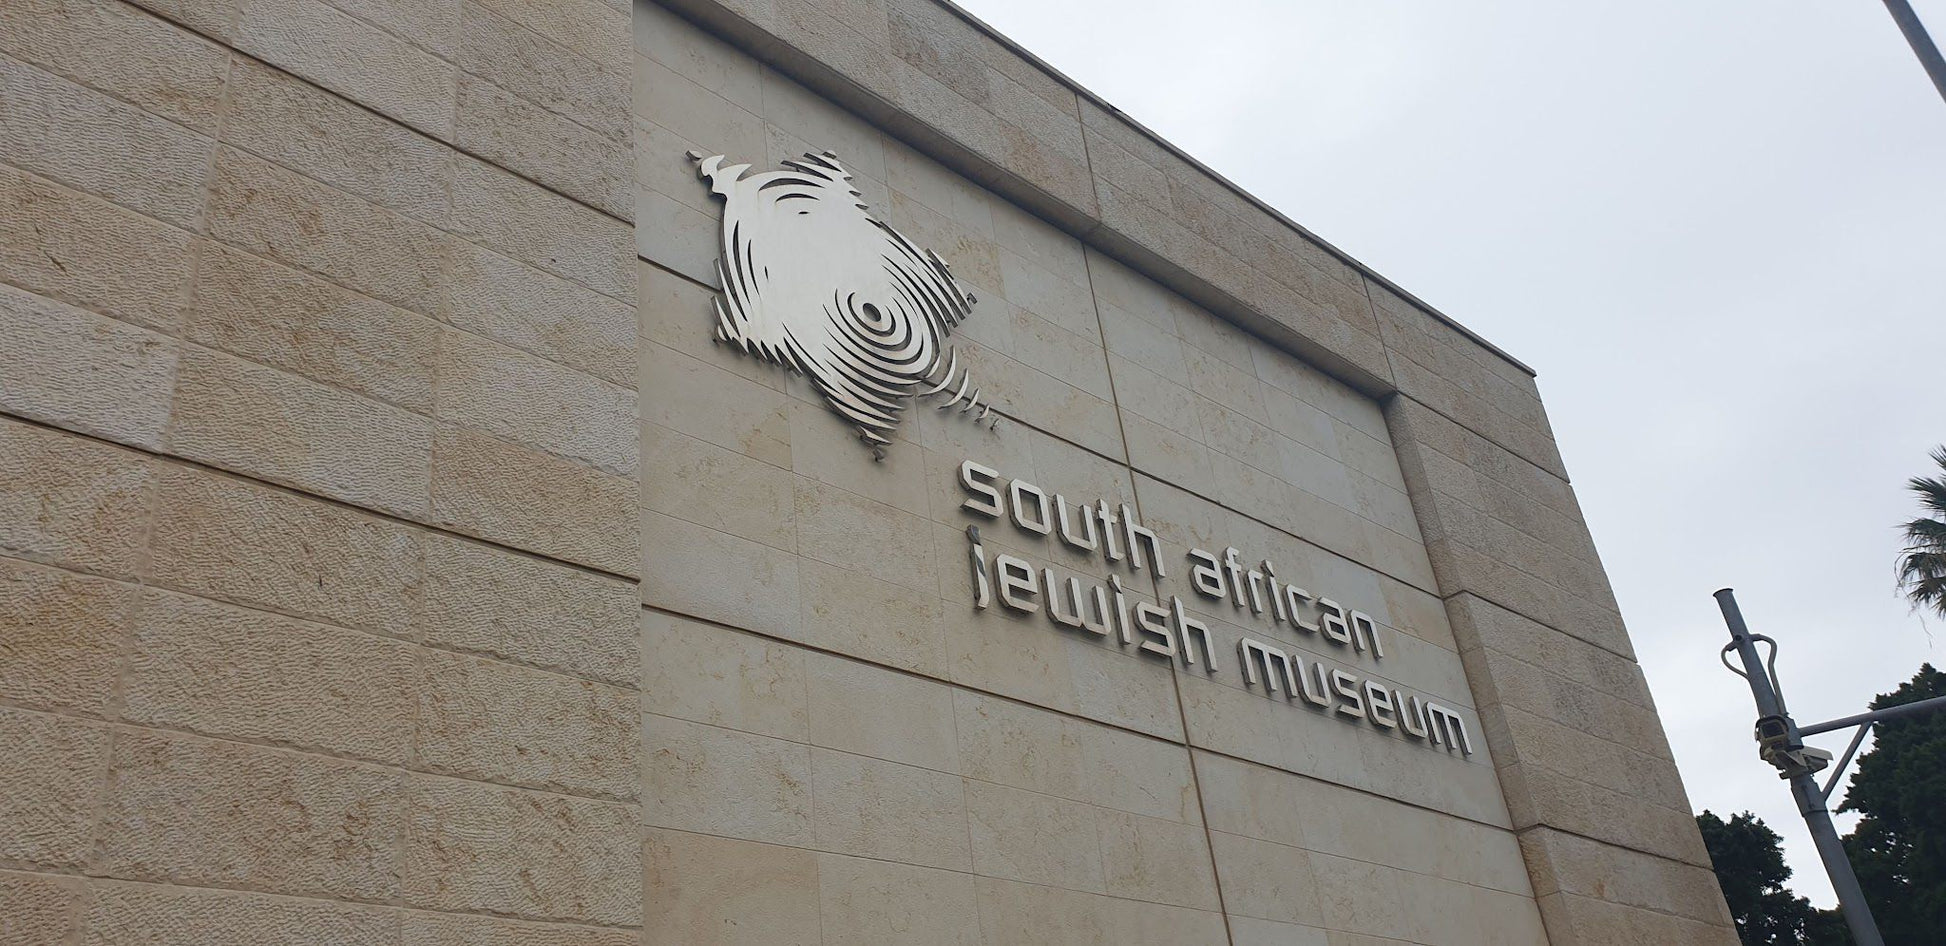  Cape Town Holocaust & Genocide Centre